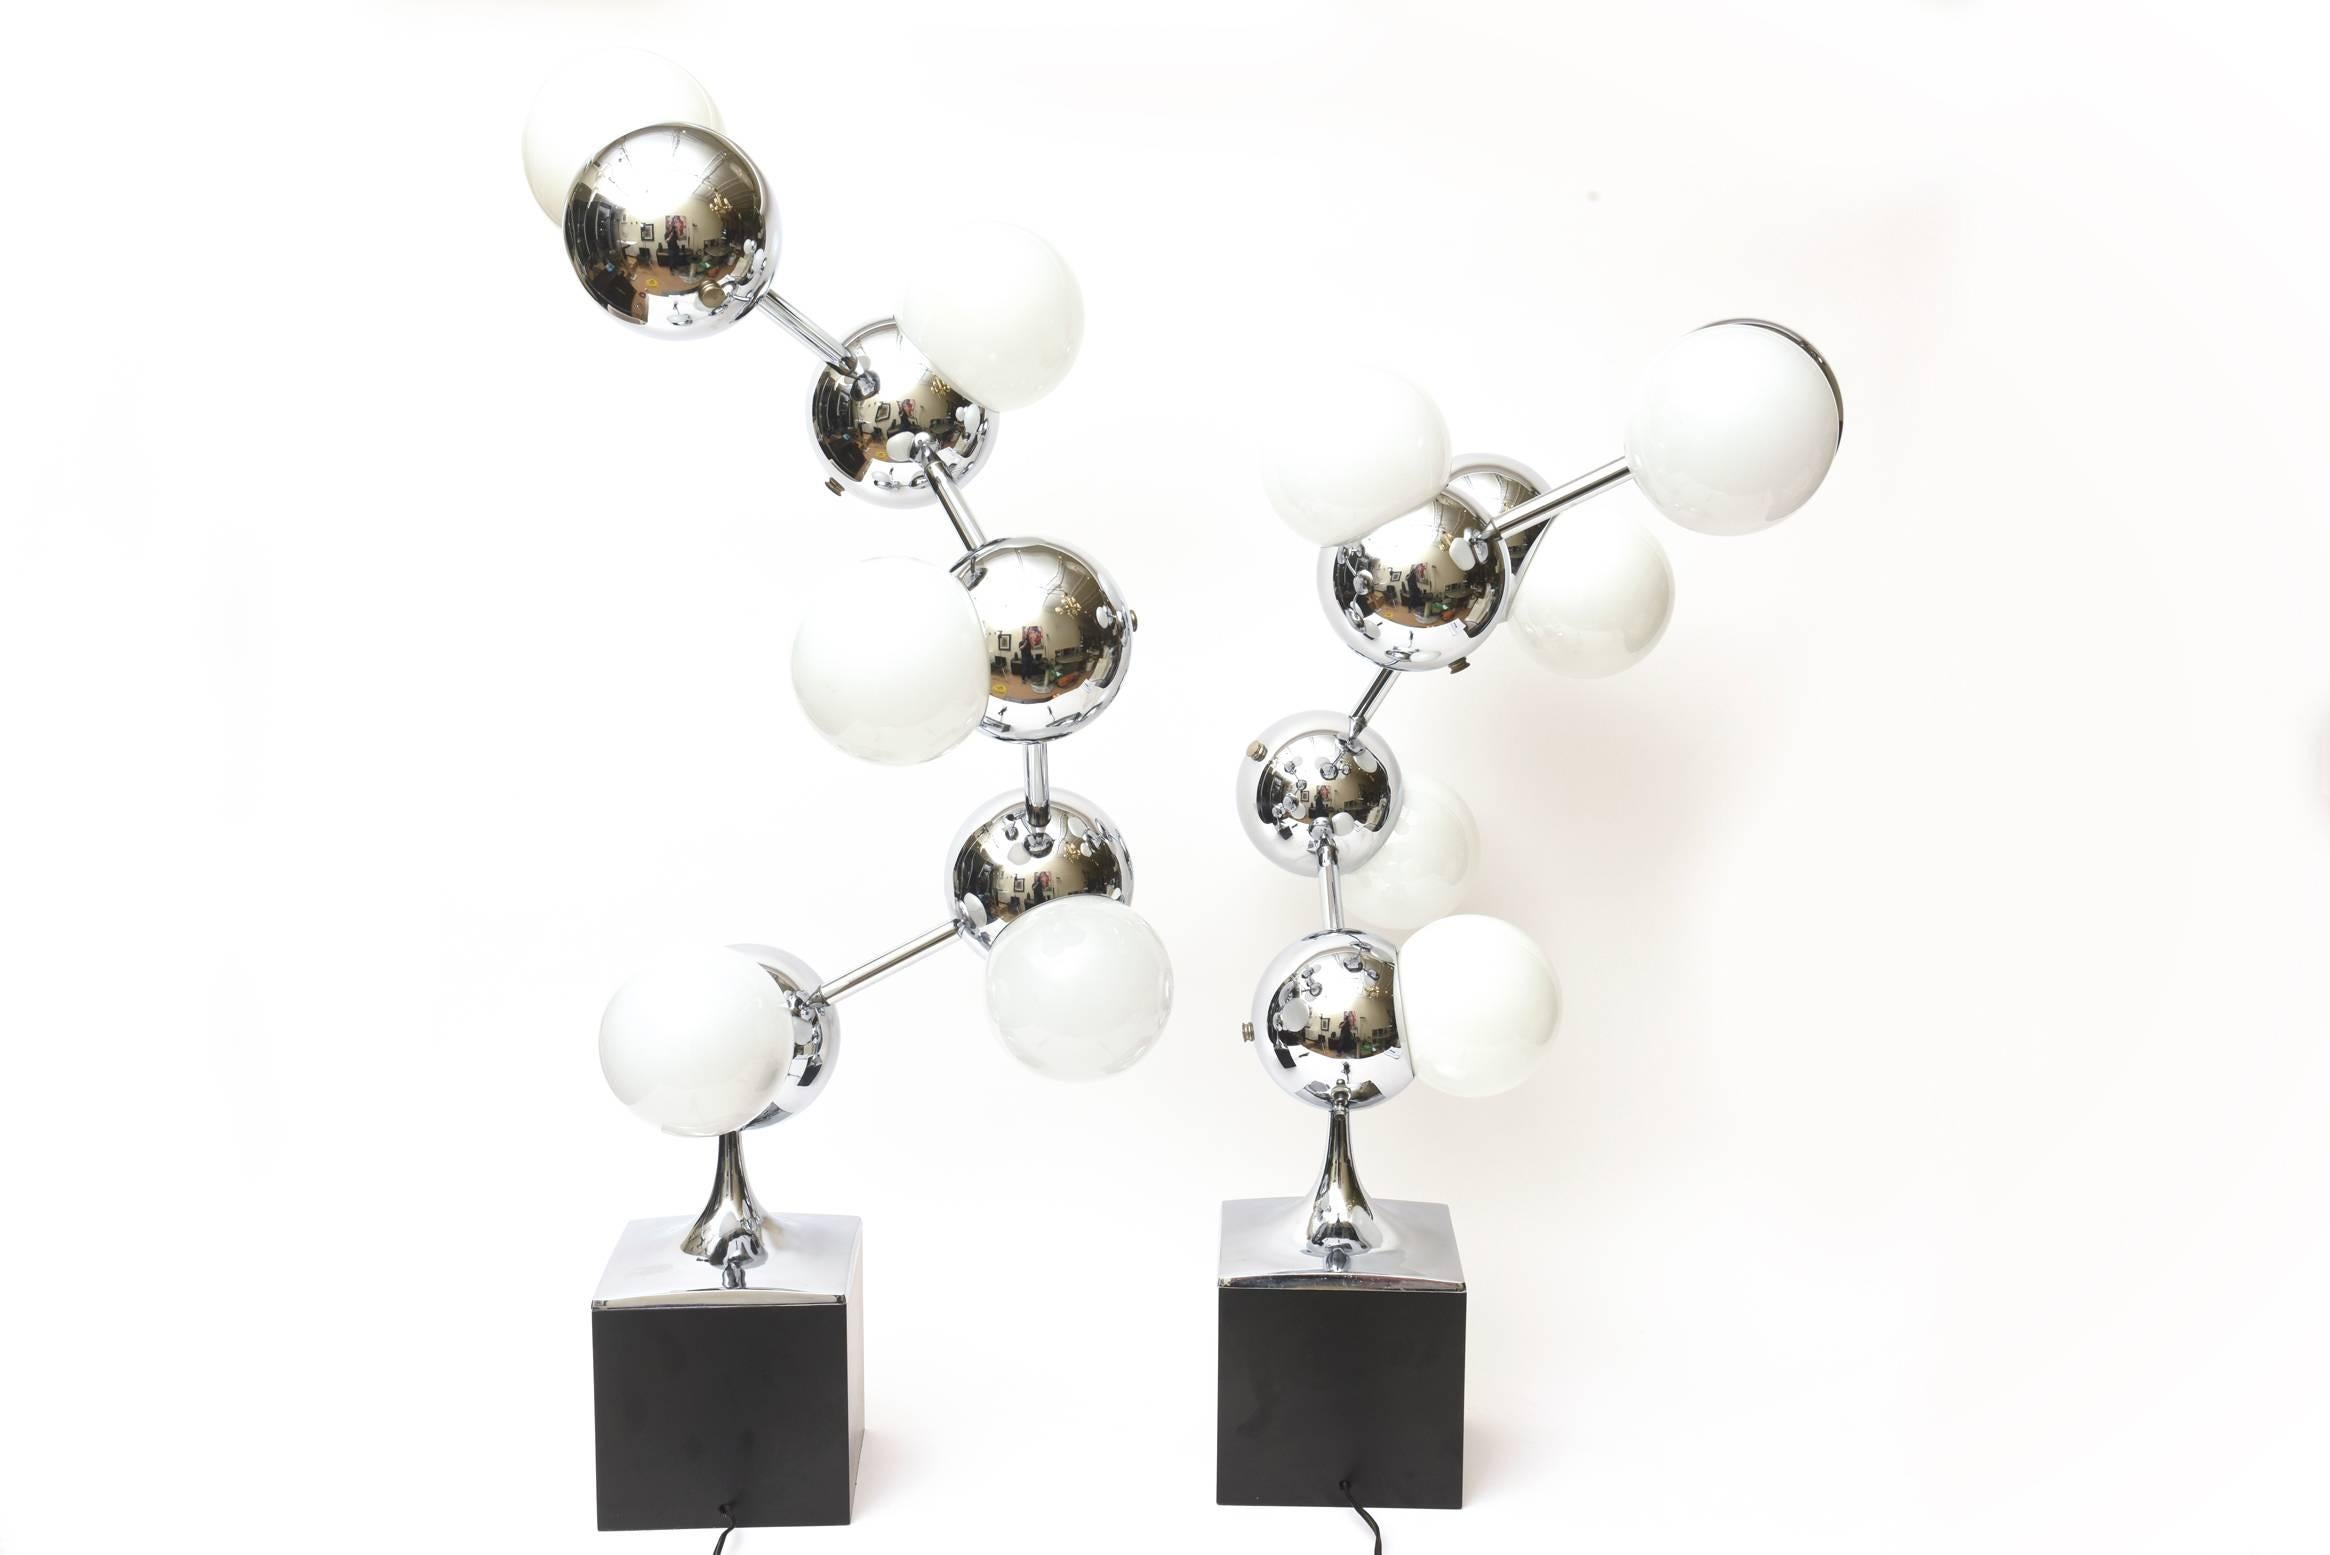 molecule lamp